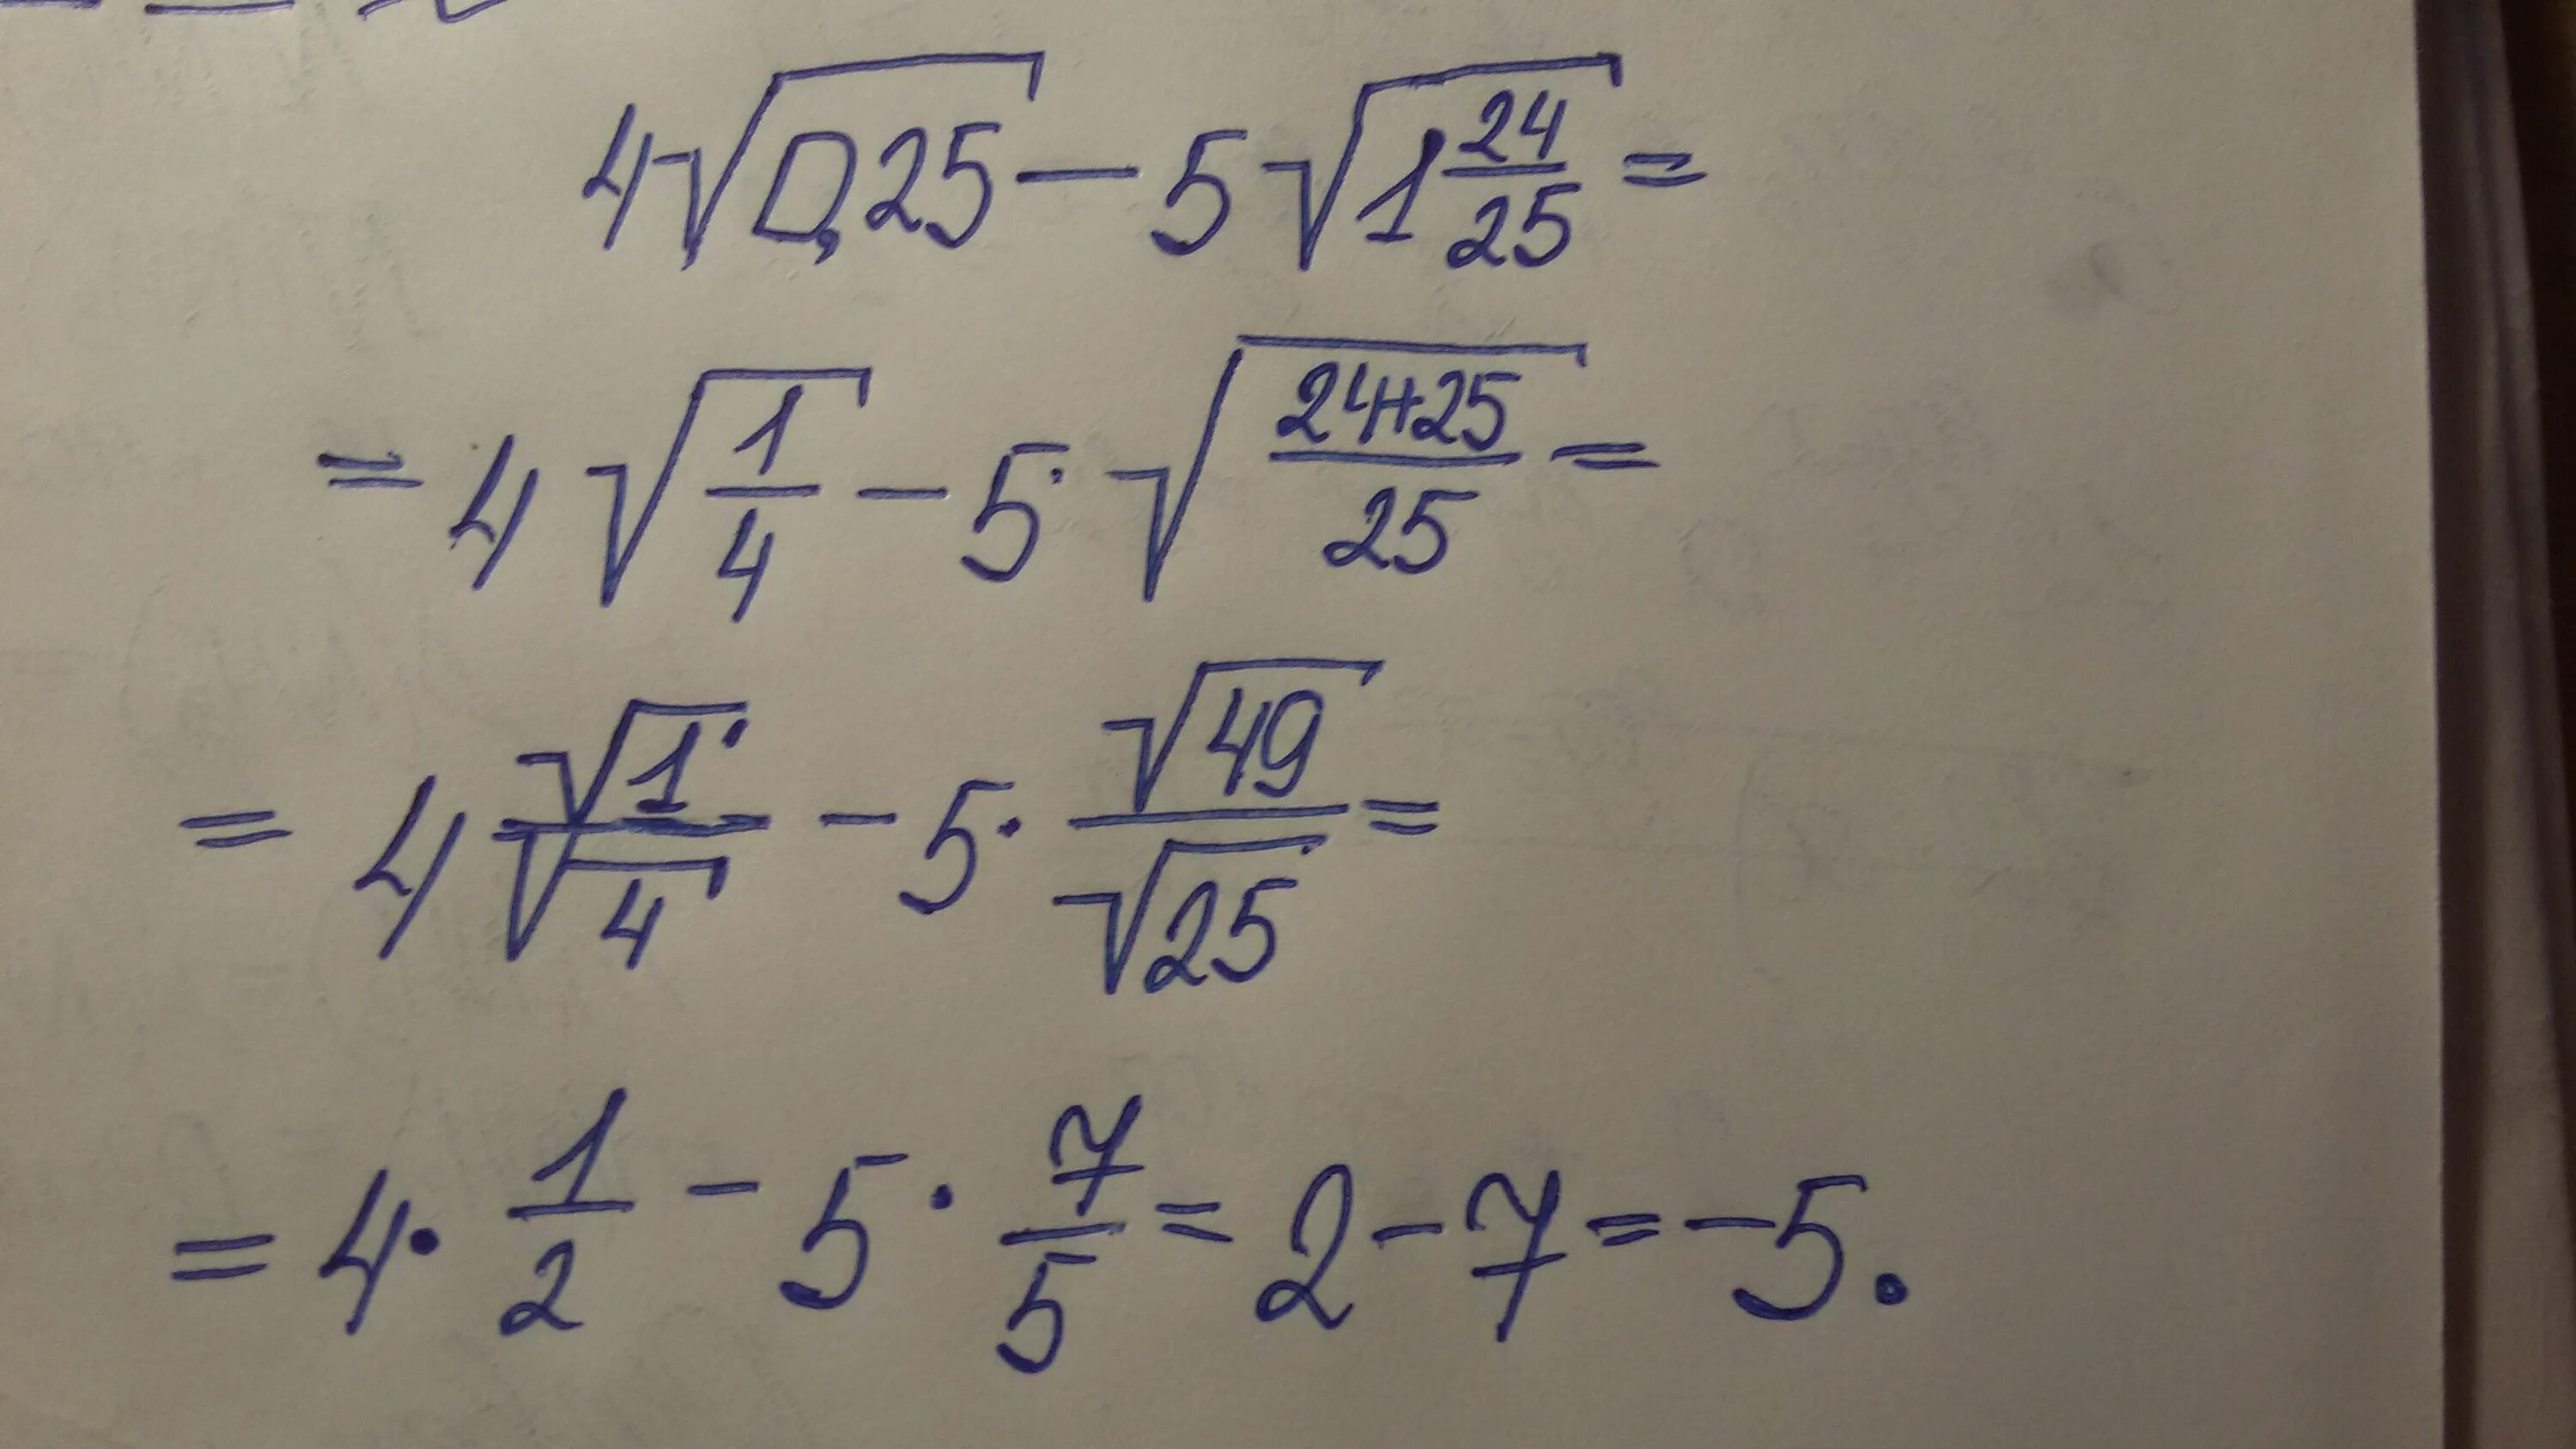 14 15 разделить на 4 9. (Корень из 7 - корень из 5) (корень из 7 - 5). Вычислите корень 0,25. Корень из 1,5. Корень из 0.